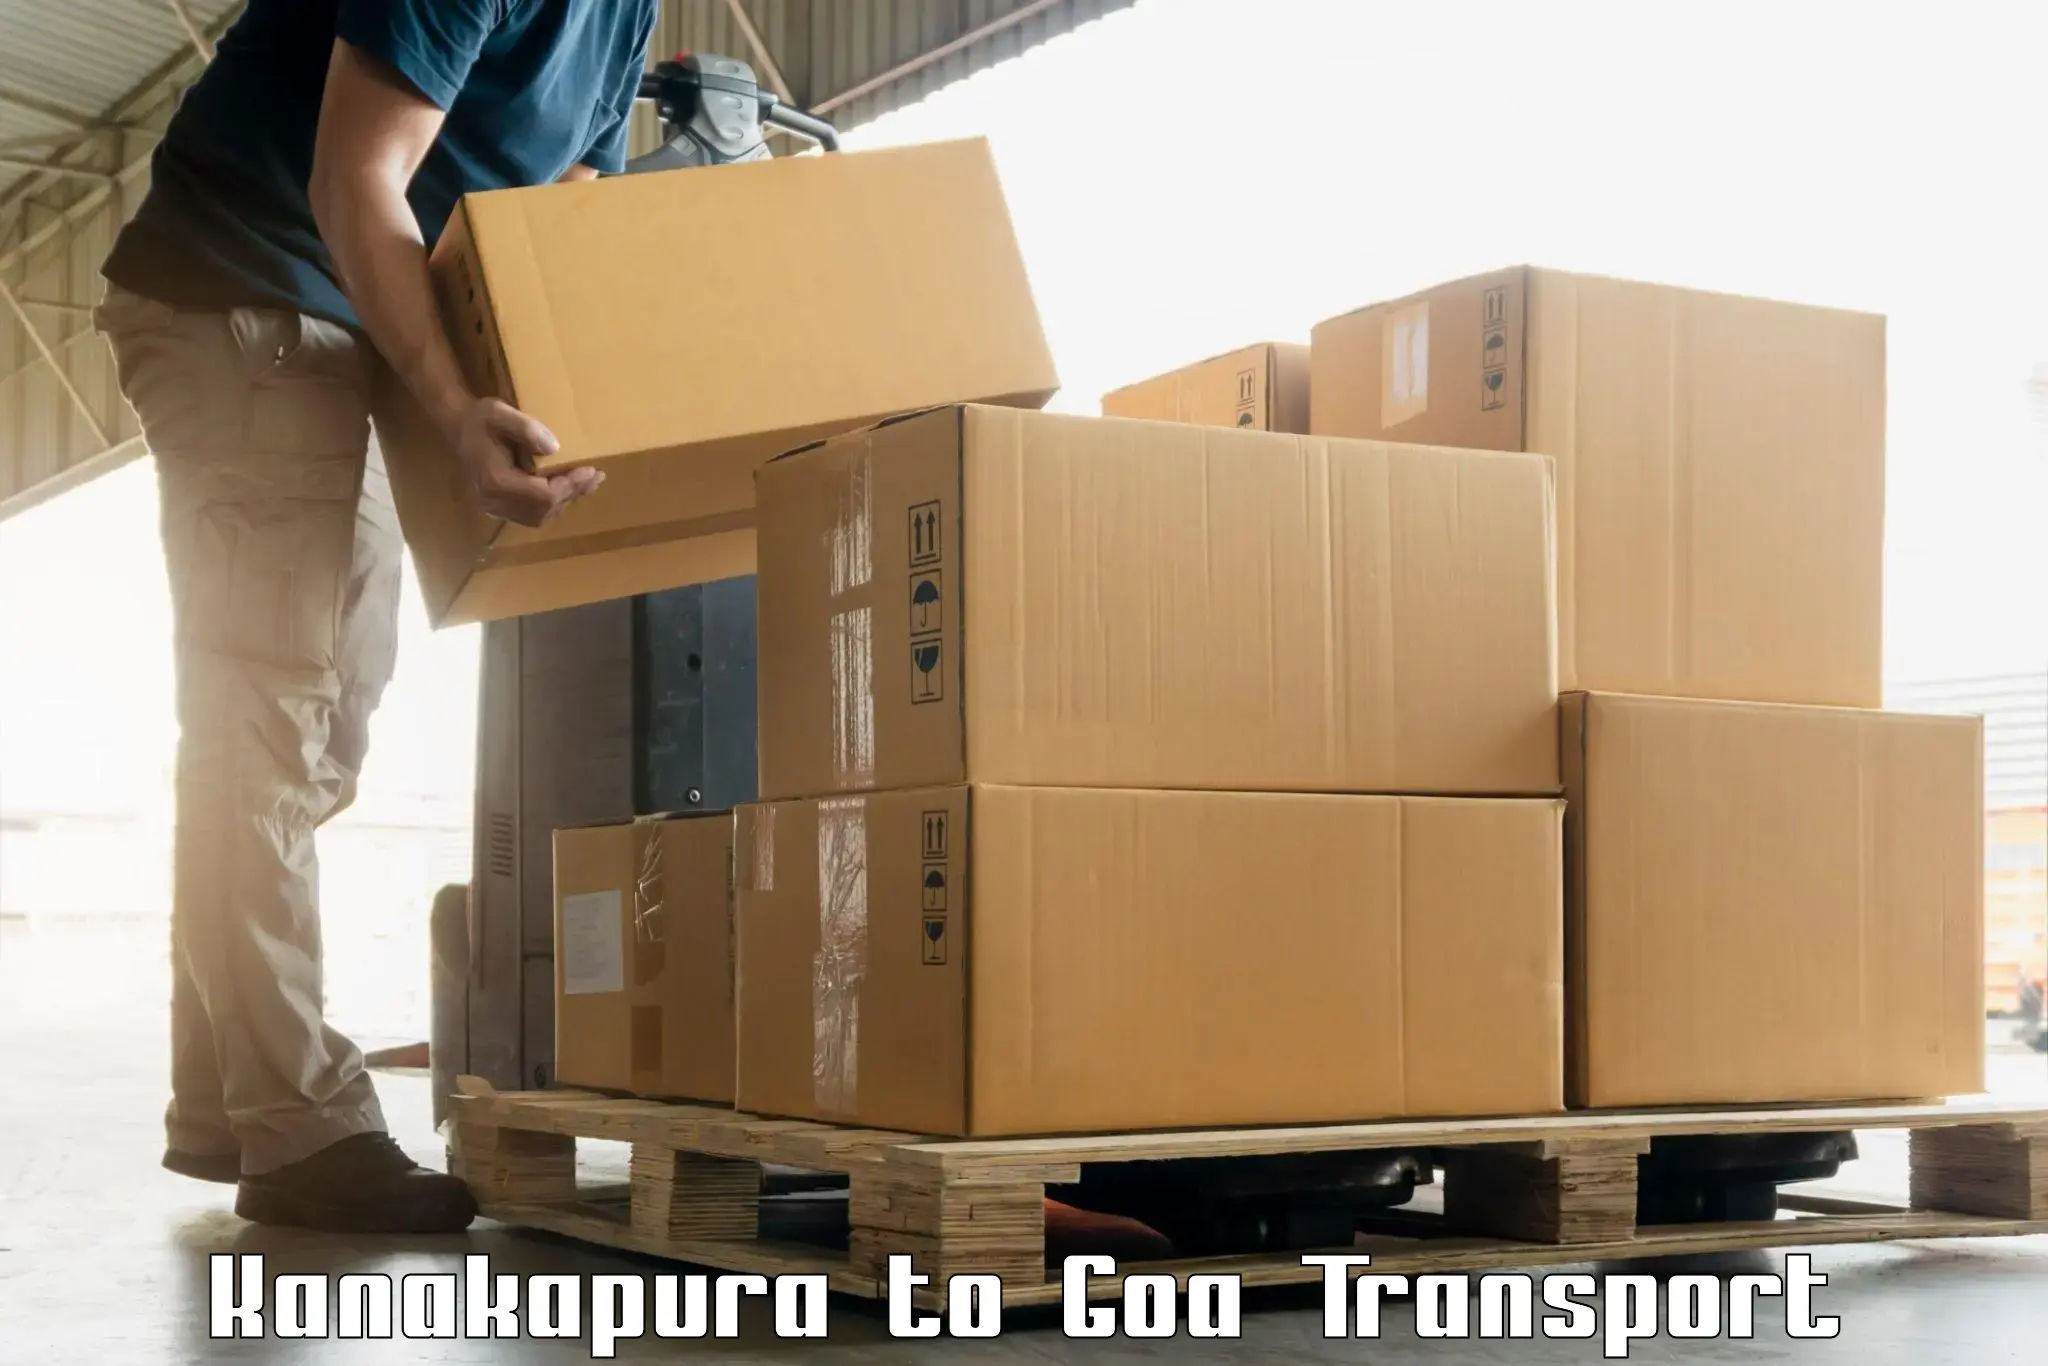 Lorry transport service Kanakapura to South Goa